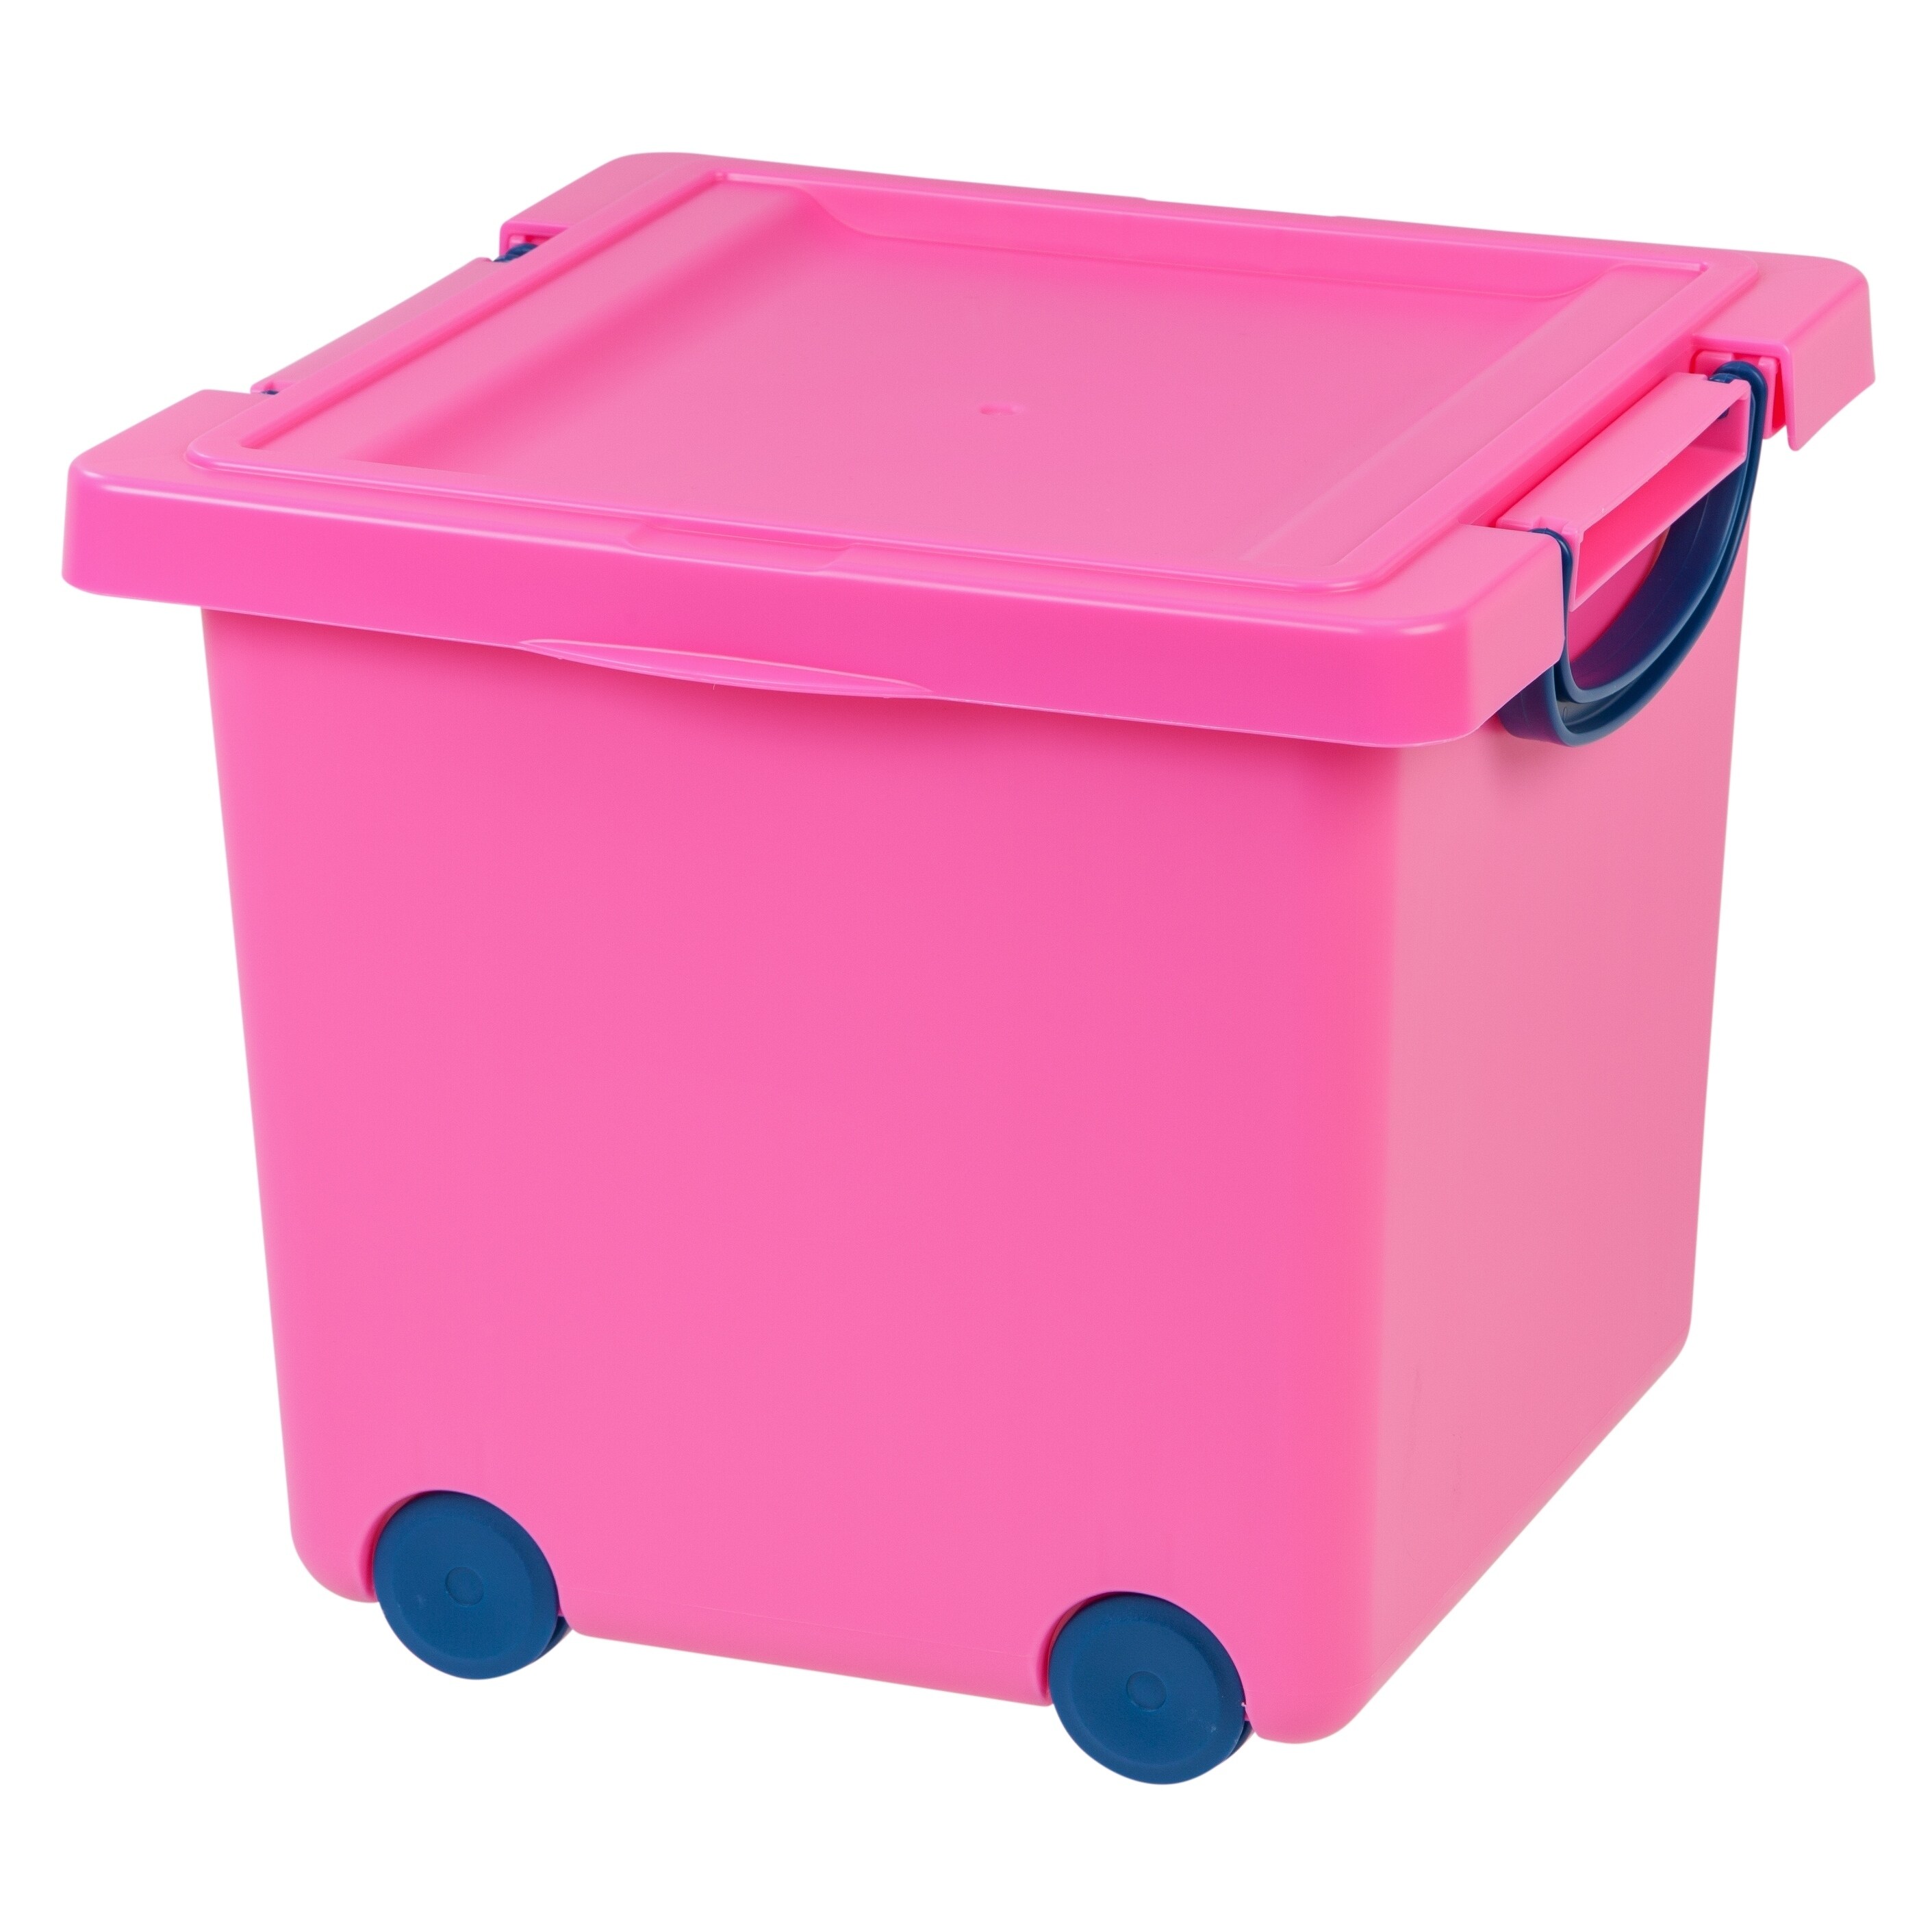 pink toy storage unit